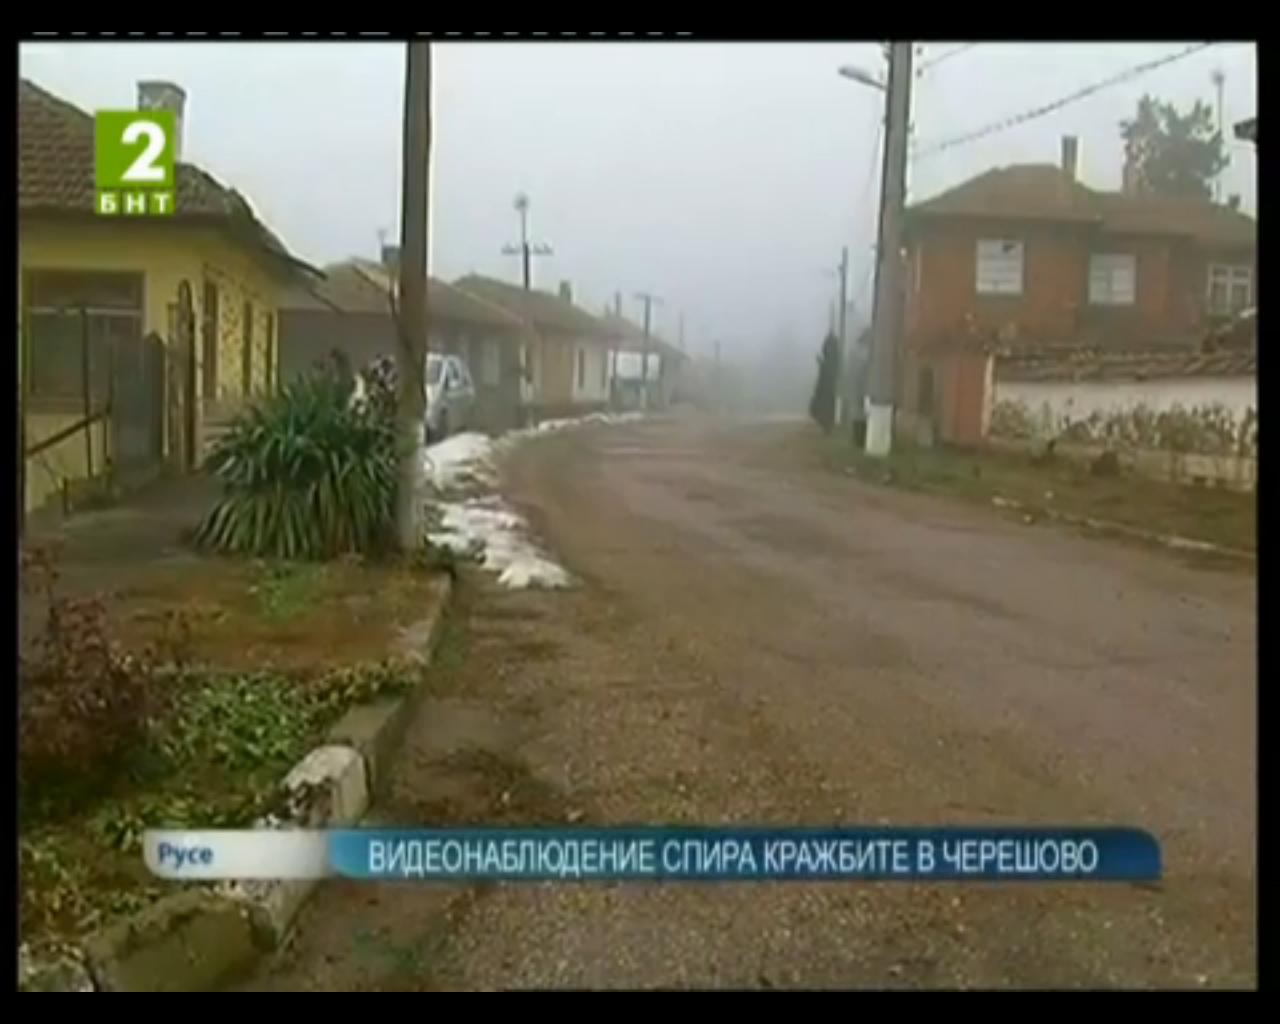 Системата от камери брани село Черешово от крадци